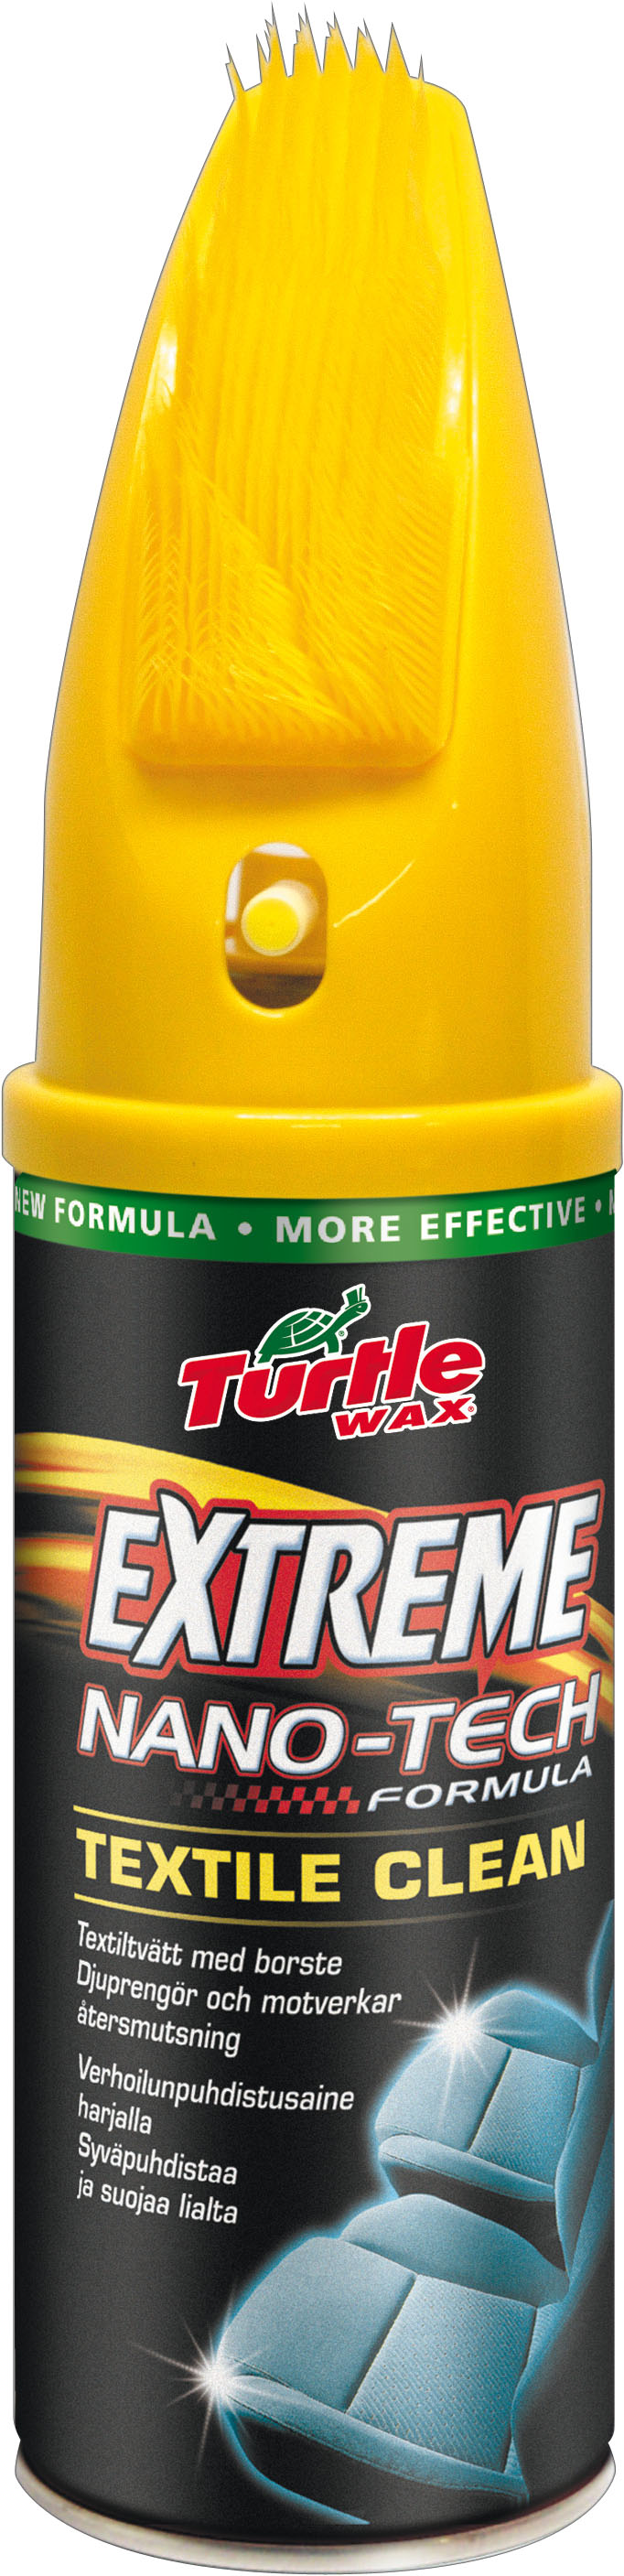 Billede af Turtle Extreme Textile cleaner 300 ml